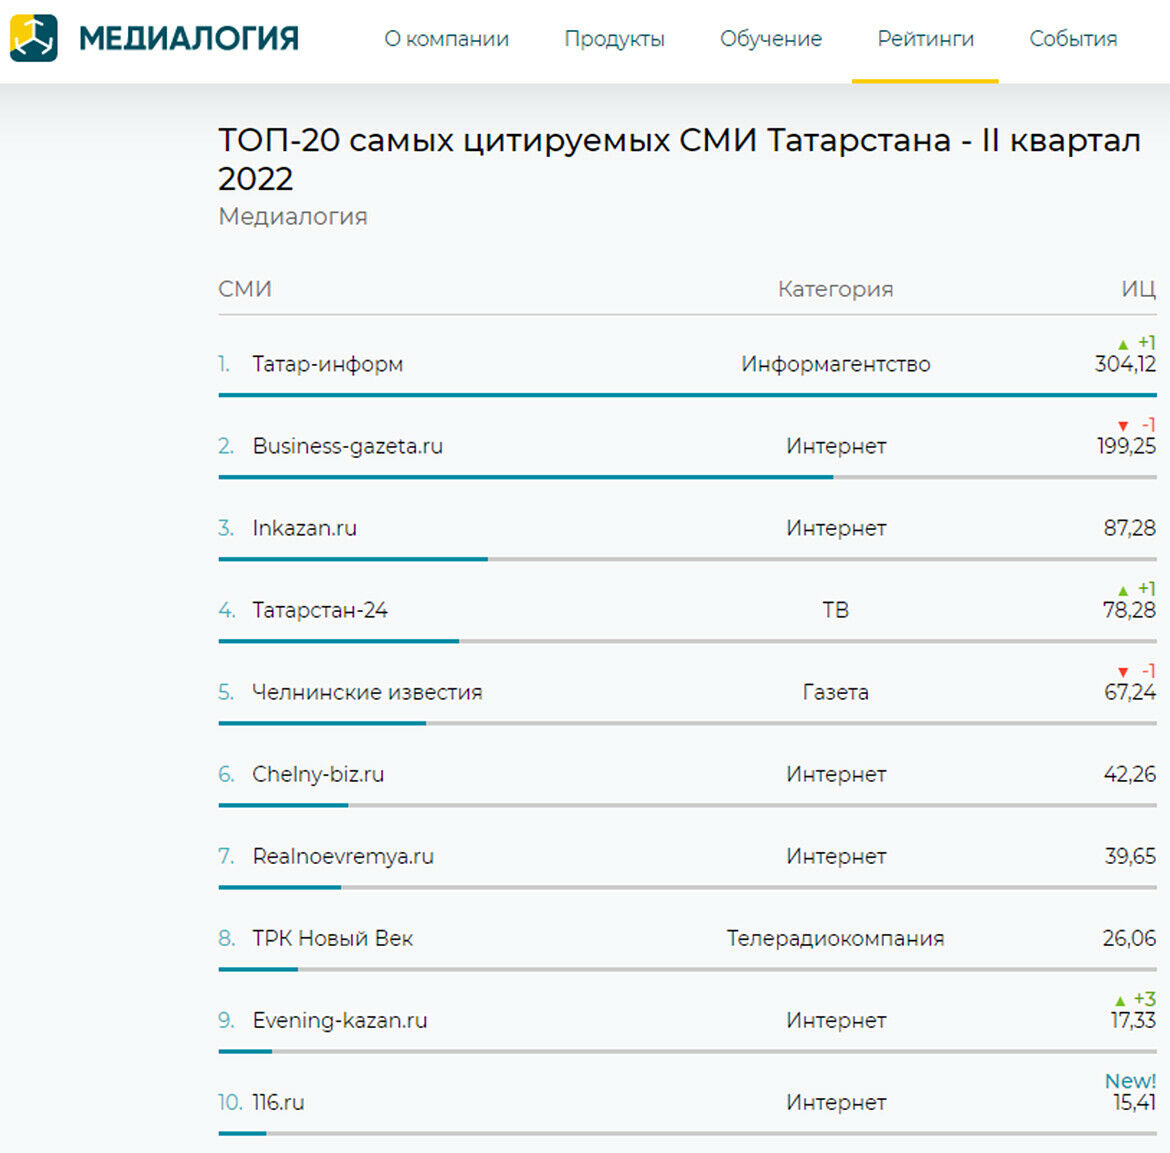 «Татар-информ» стал самым цитируемым СМИ Татарстана по итогам второго квартала 2022 года